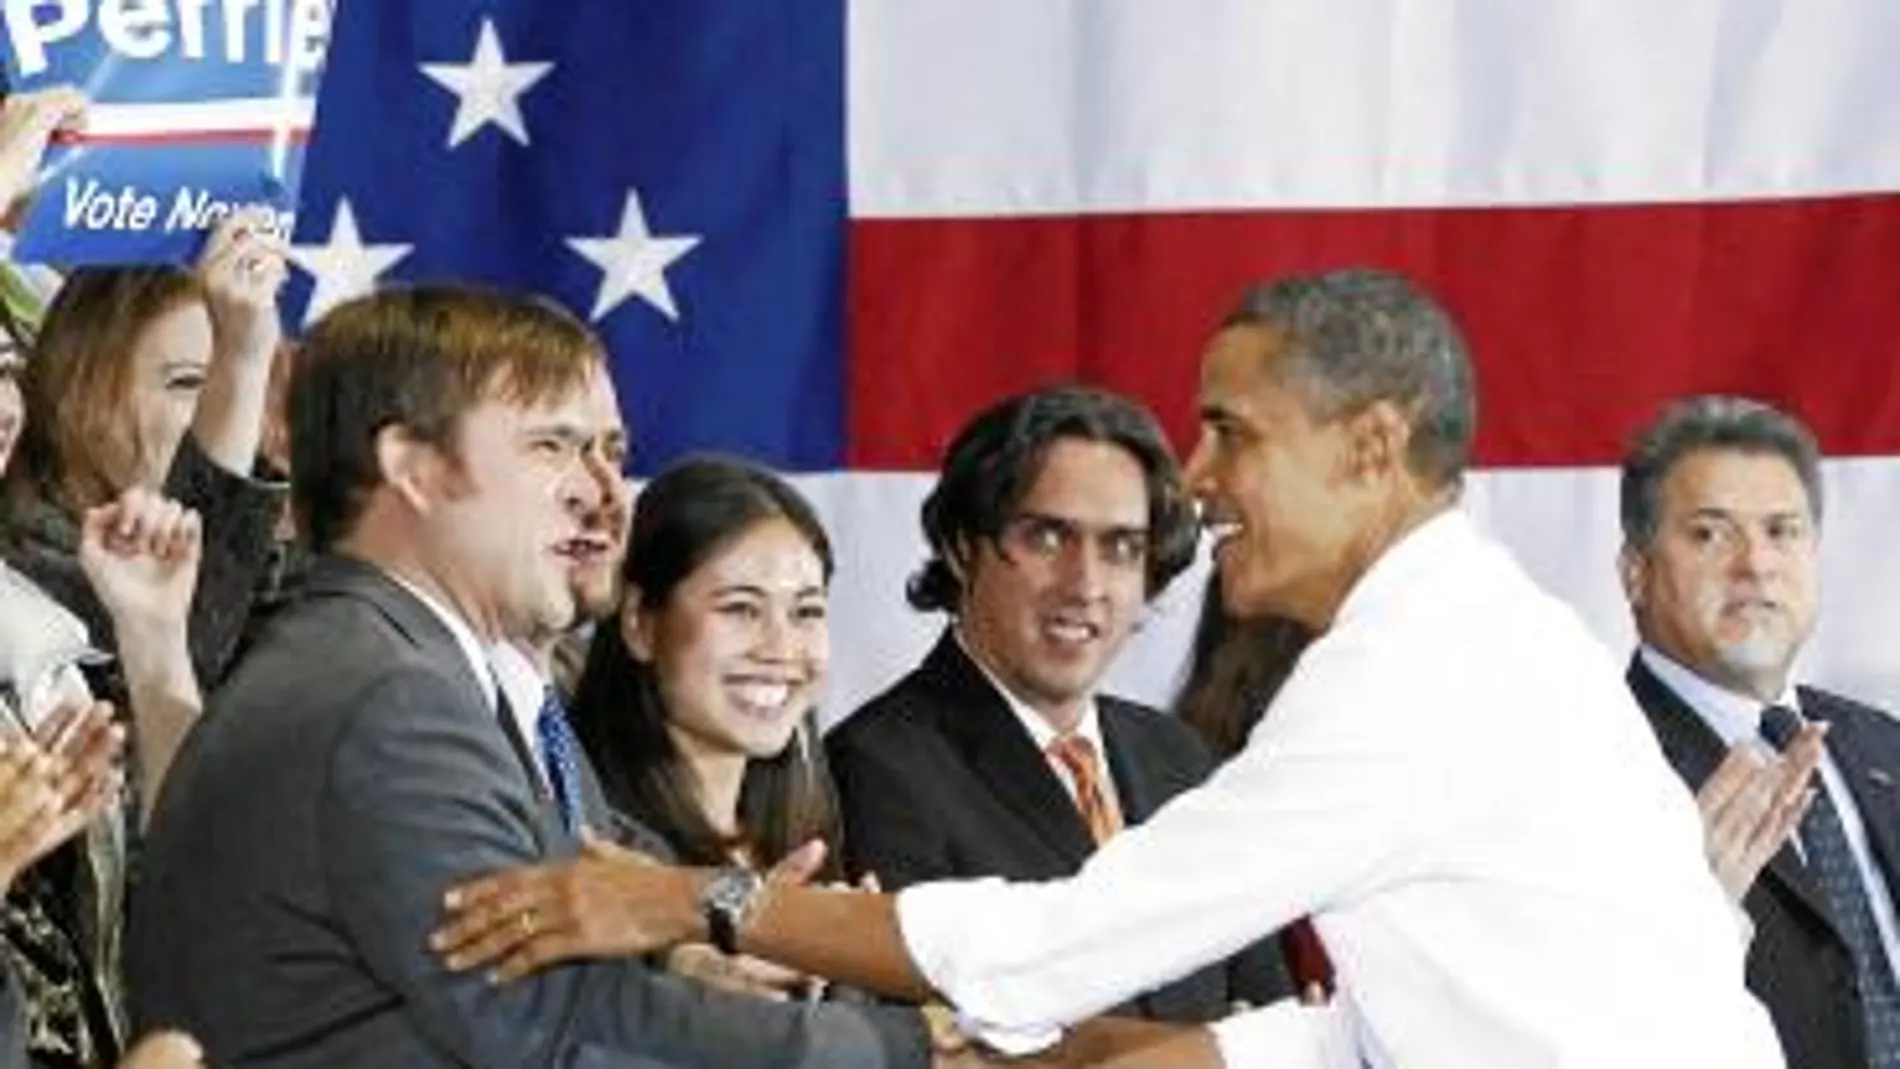 Barack Obama saluda al diputado Tom Perriello en Charlottesville, Virginia, dentro de su campaña de apoyo a los candidatos demócratas